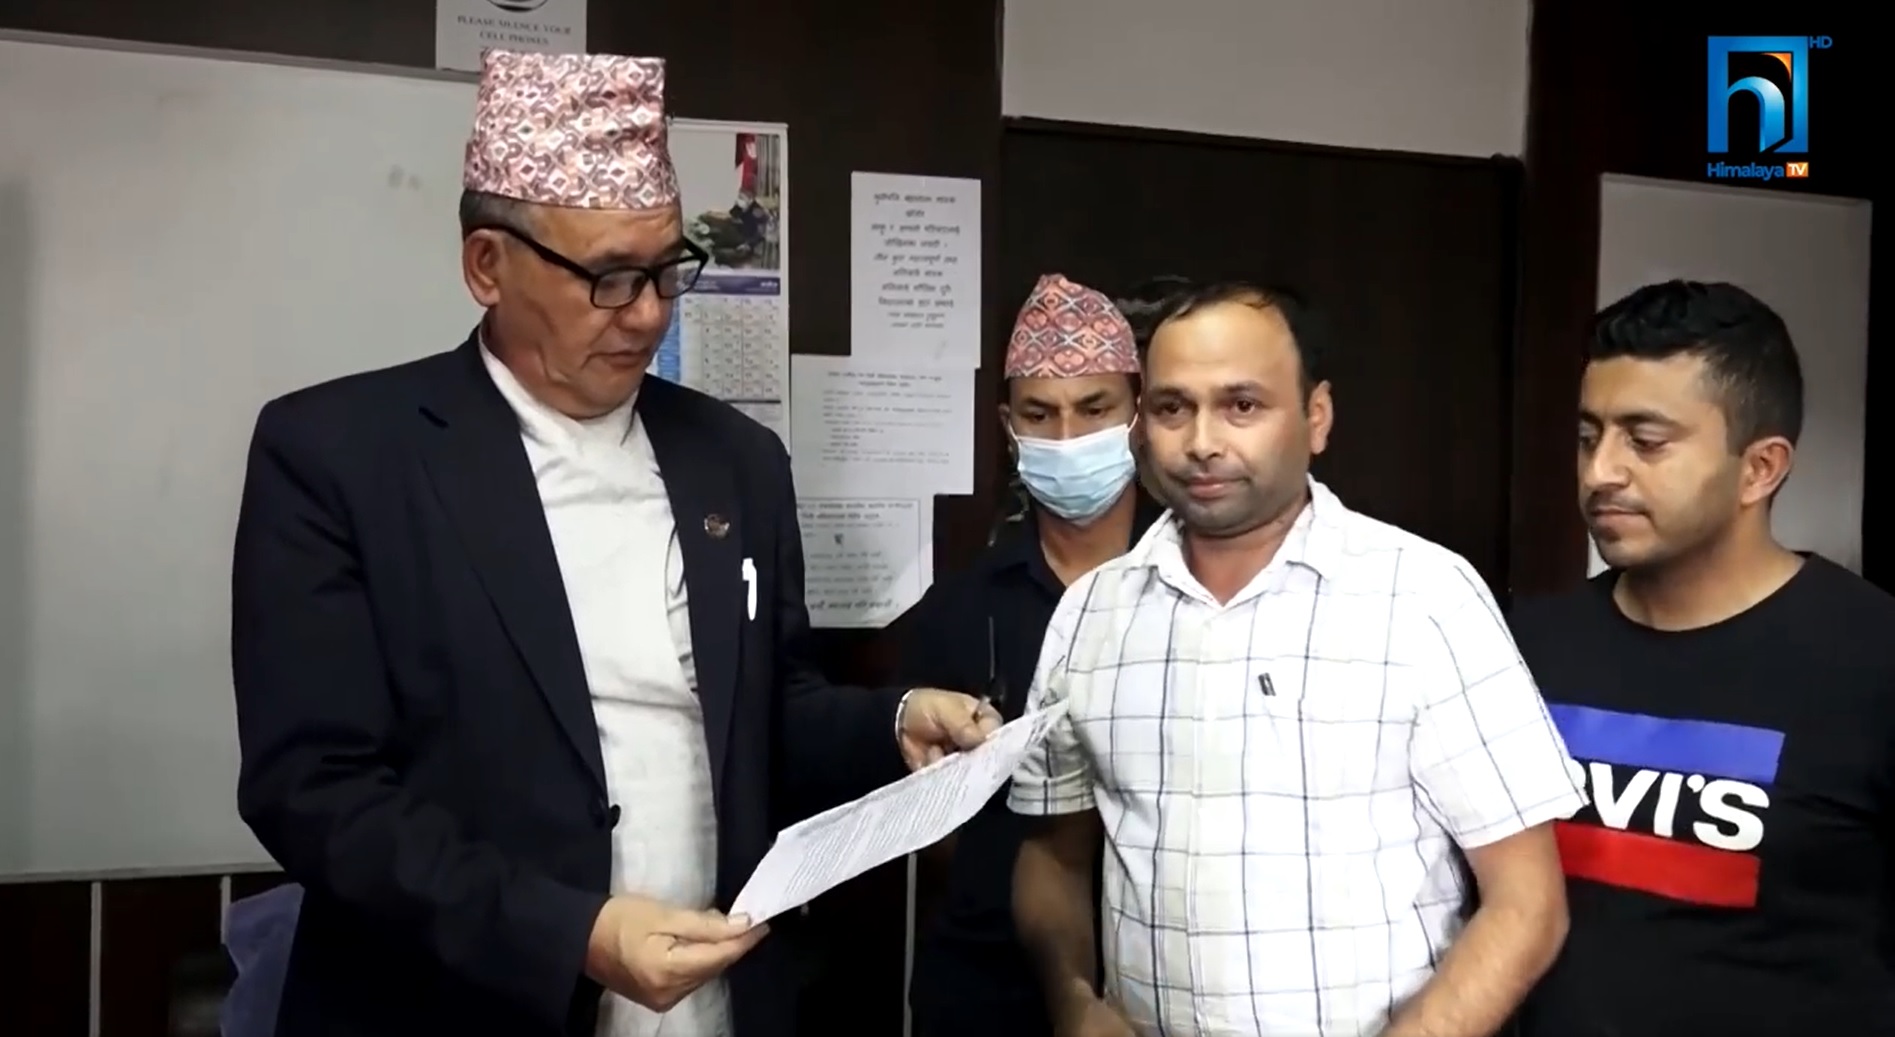 आधारभूत स्वास्थ्य केन्द्रको दरबन्दी संरचनामा सुधार गर्न हेल्थ असिस्टेन्ट संघ नेपाल माग भिडियो रिपोर्टसहित)